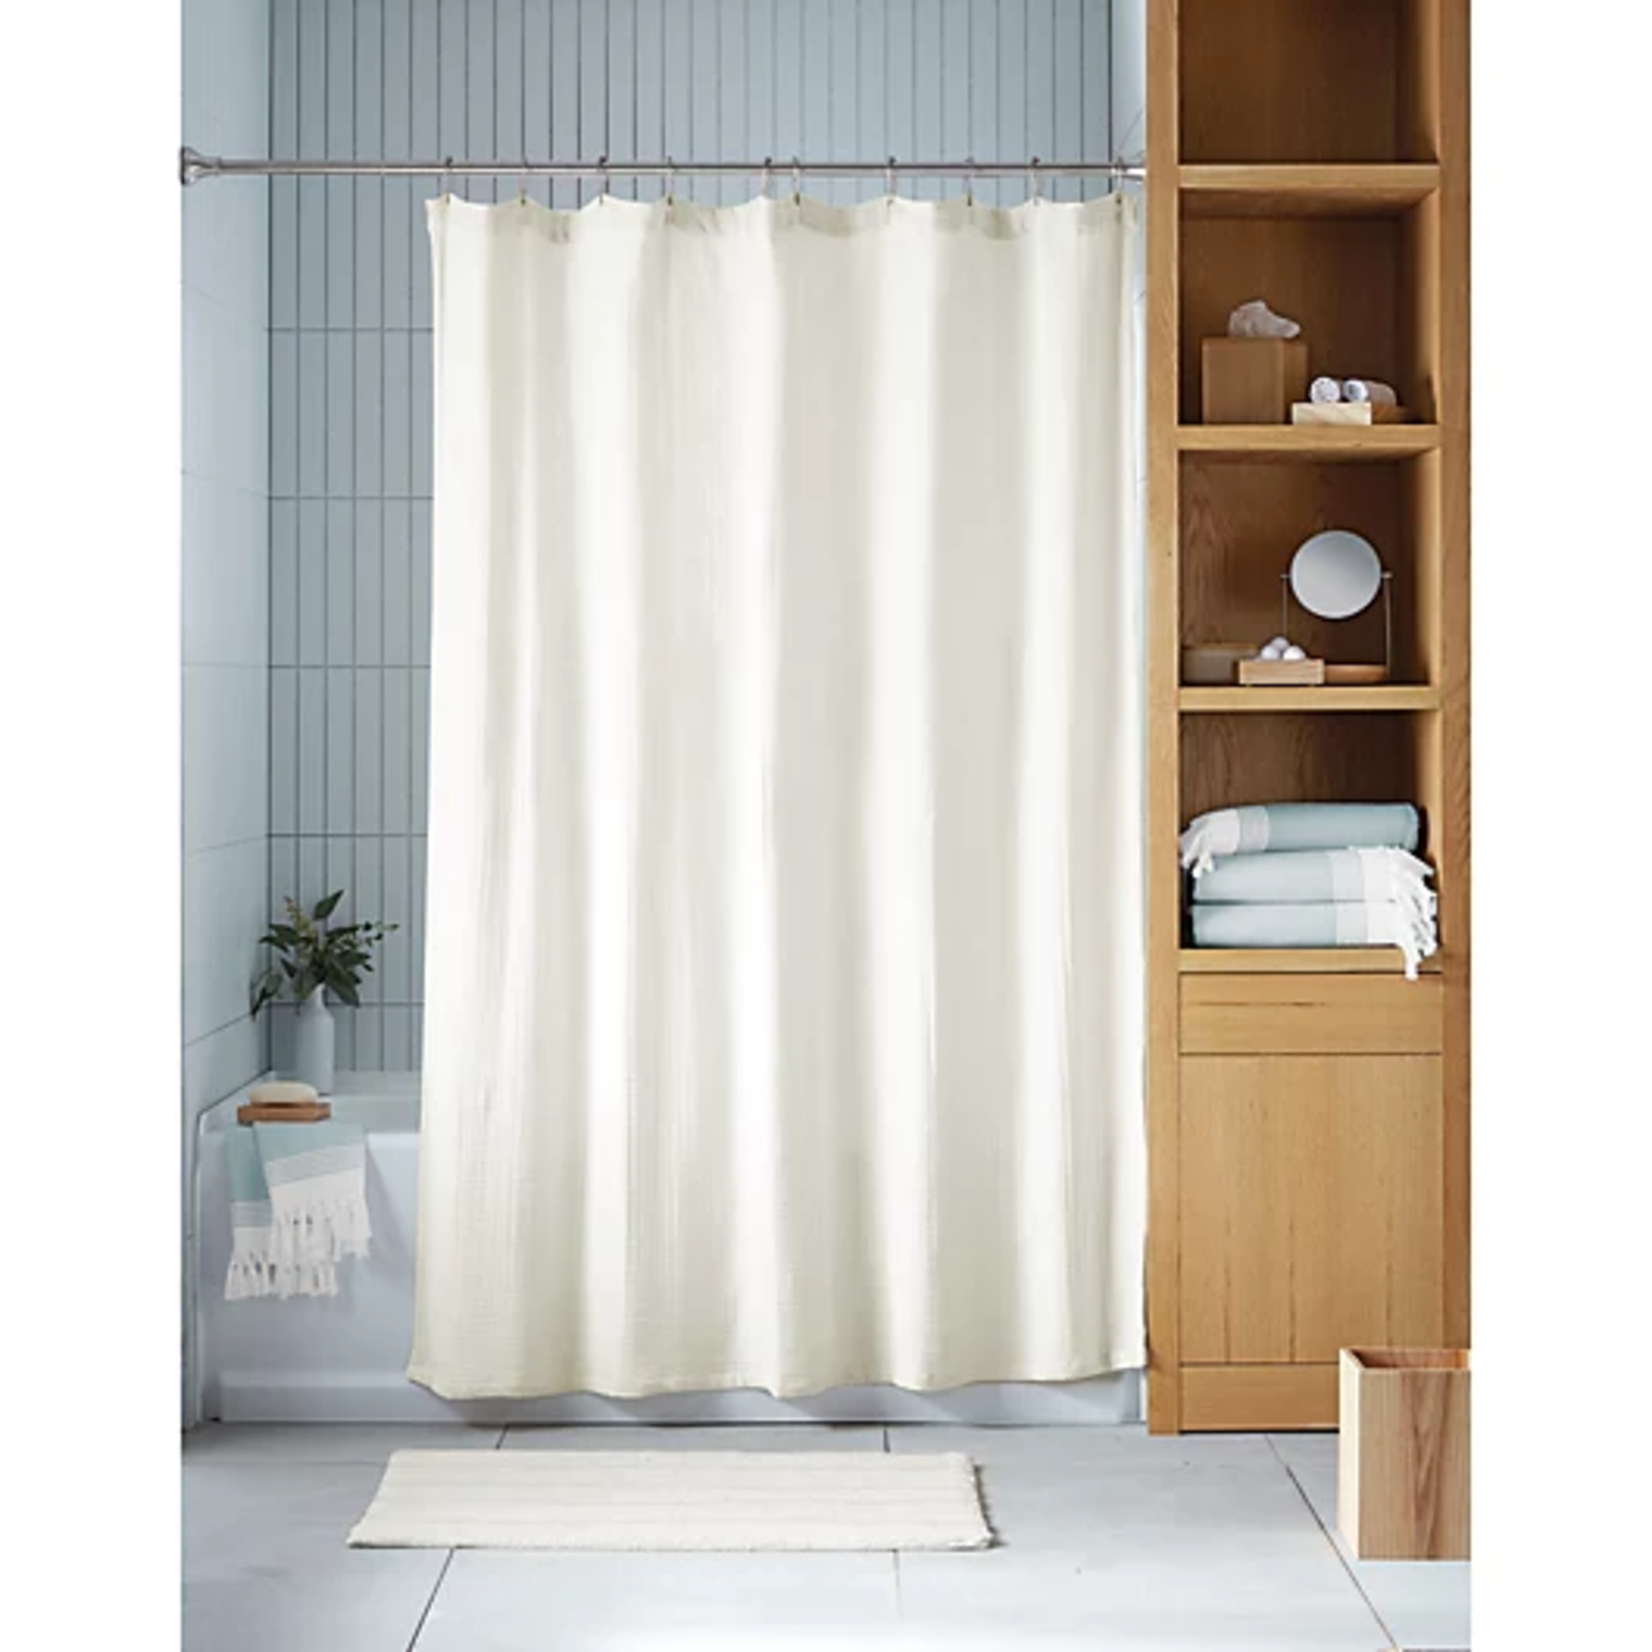 Haven | Double Gauze Organic Cotton Shower Curtain 72"x72"- Coconut Milk